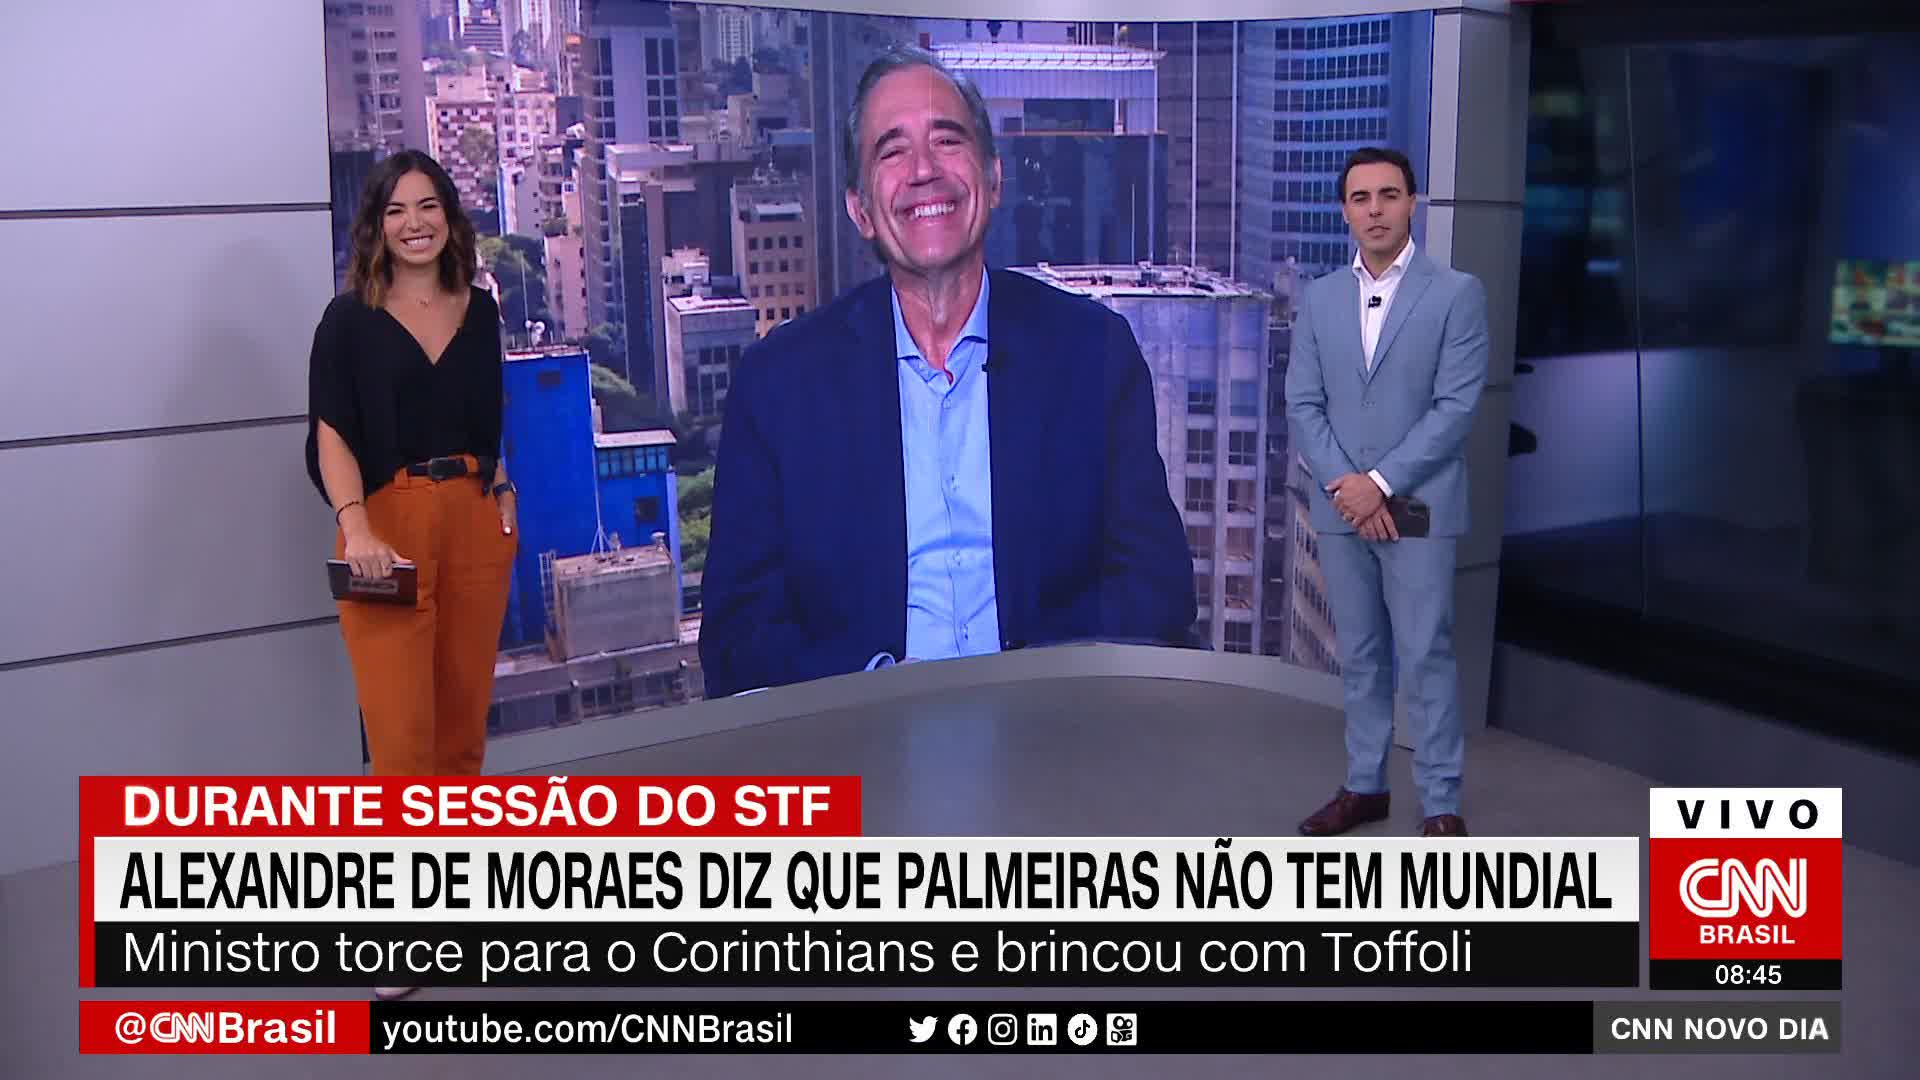 O Palmeiras não tem Mundial, como diz Alexandre de Moraes? Marco